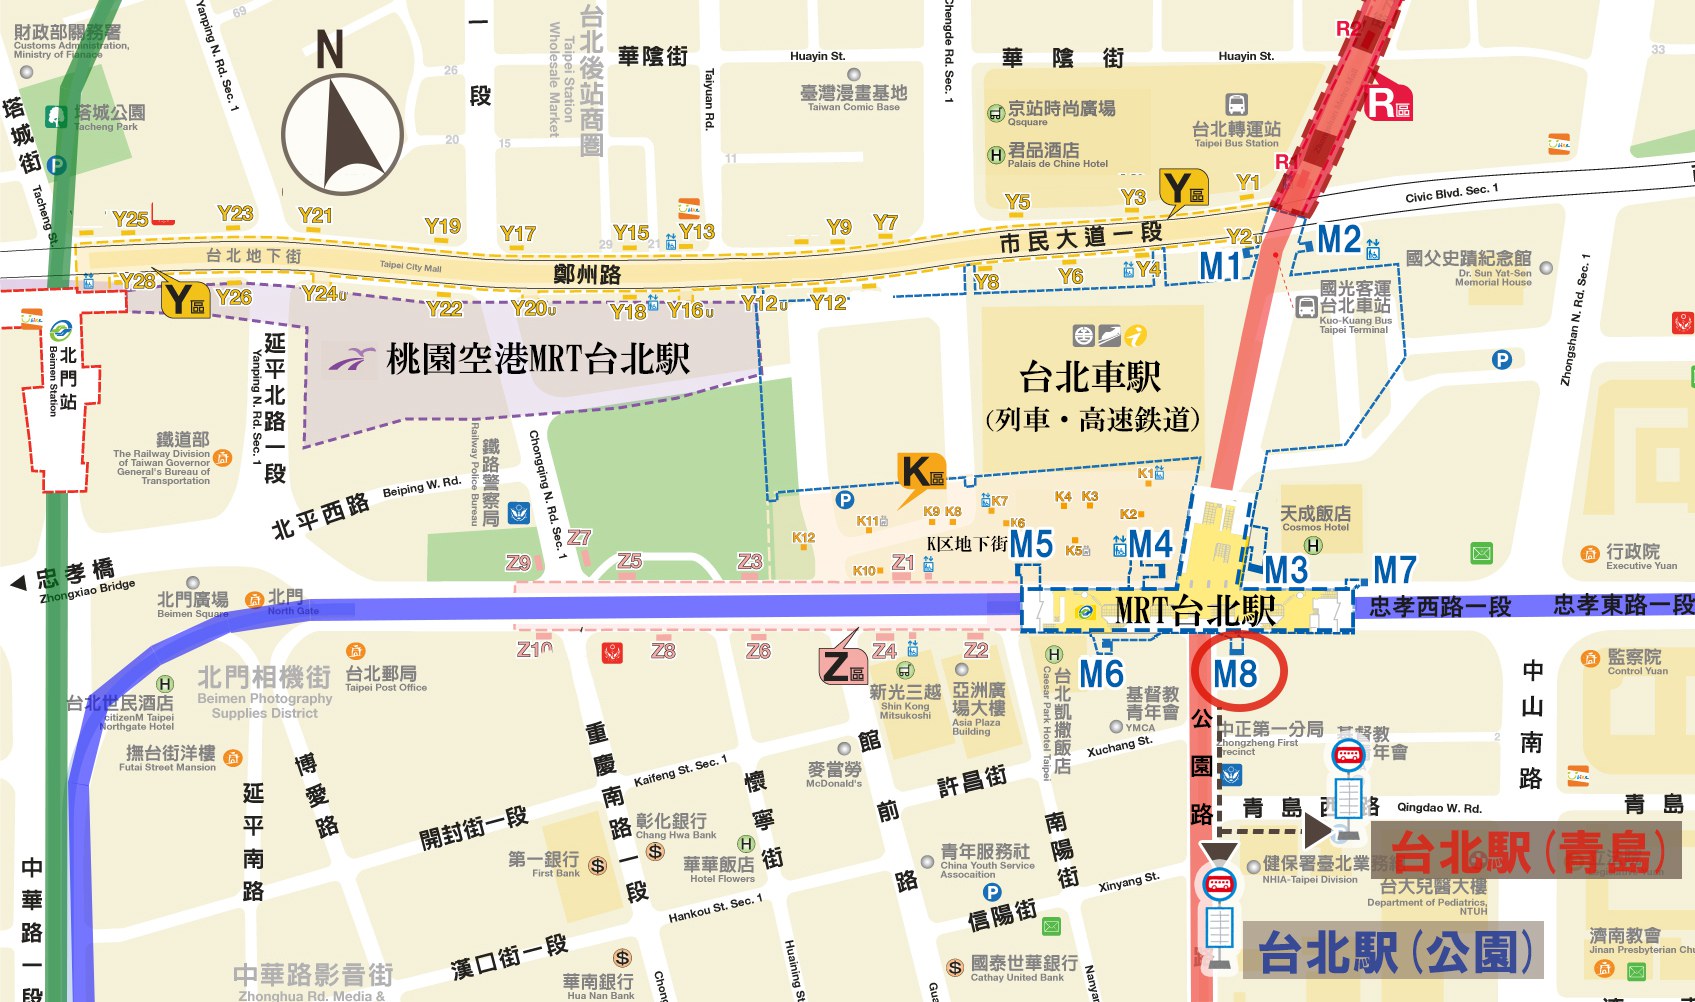 「烏來行き」バス停の位置<br />台北駅(公園) or 台北駅(青島)